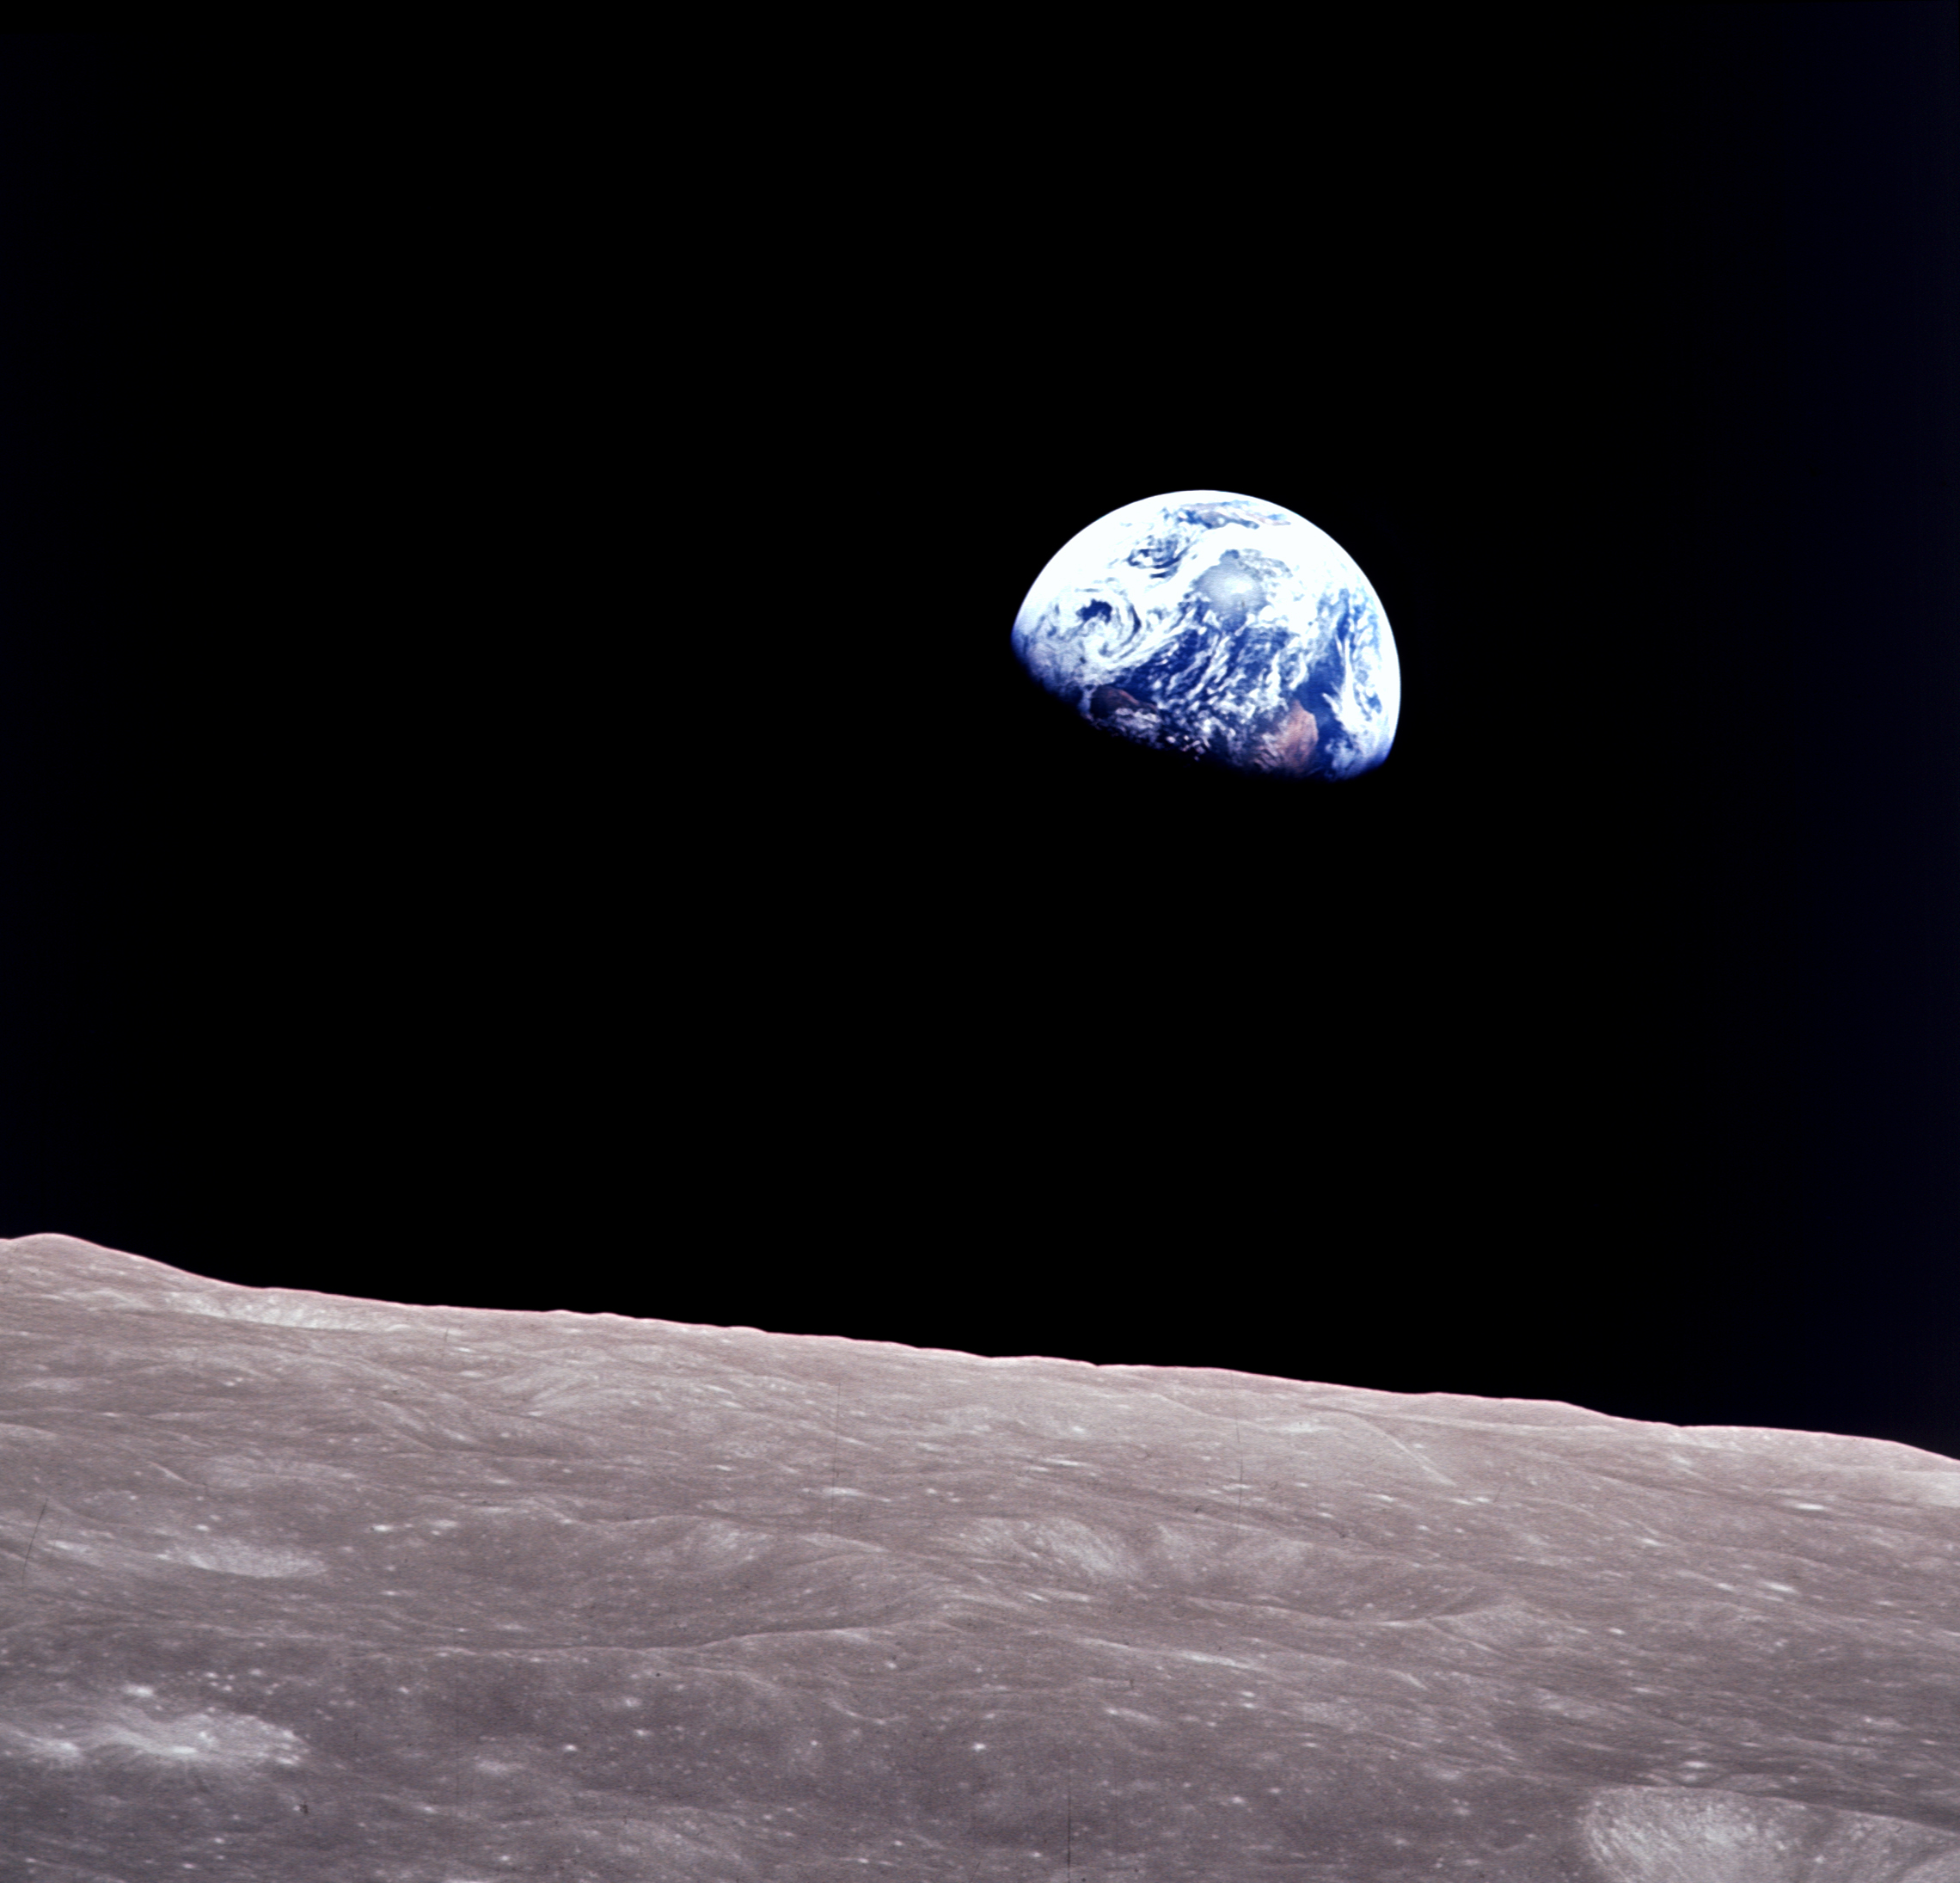 APOLLO 8: dalla Terra alla Luna, quando la fantascienza diventa realtà 50 anni apollo 11, Alessia Cassetti, apollo 8, Associazione LOfficina, astronautica, luna, missioni spaziali, news, saturno 5, spazio, terra